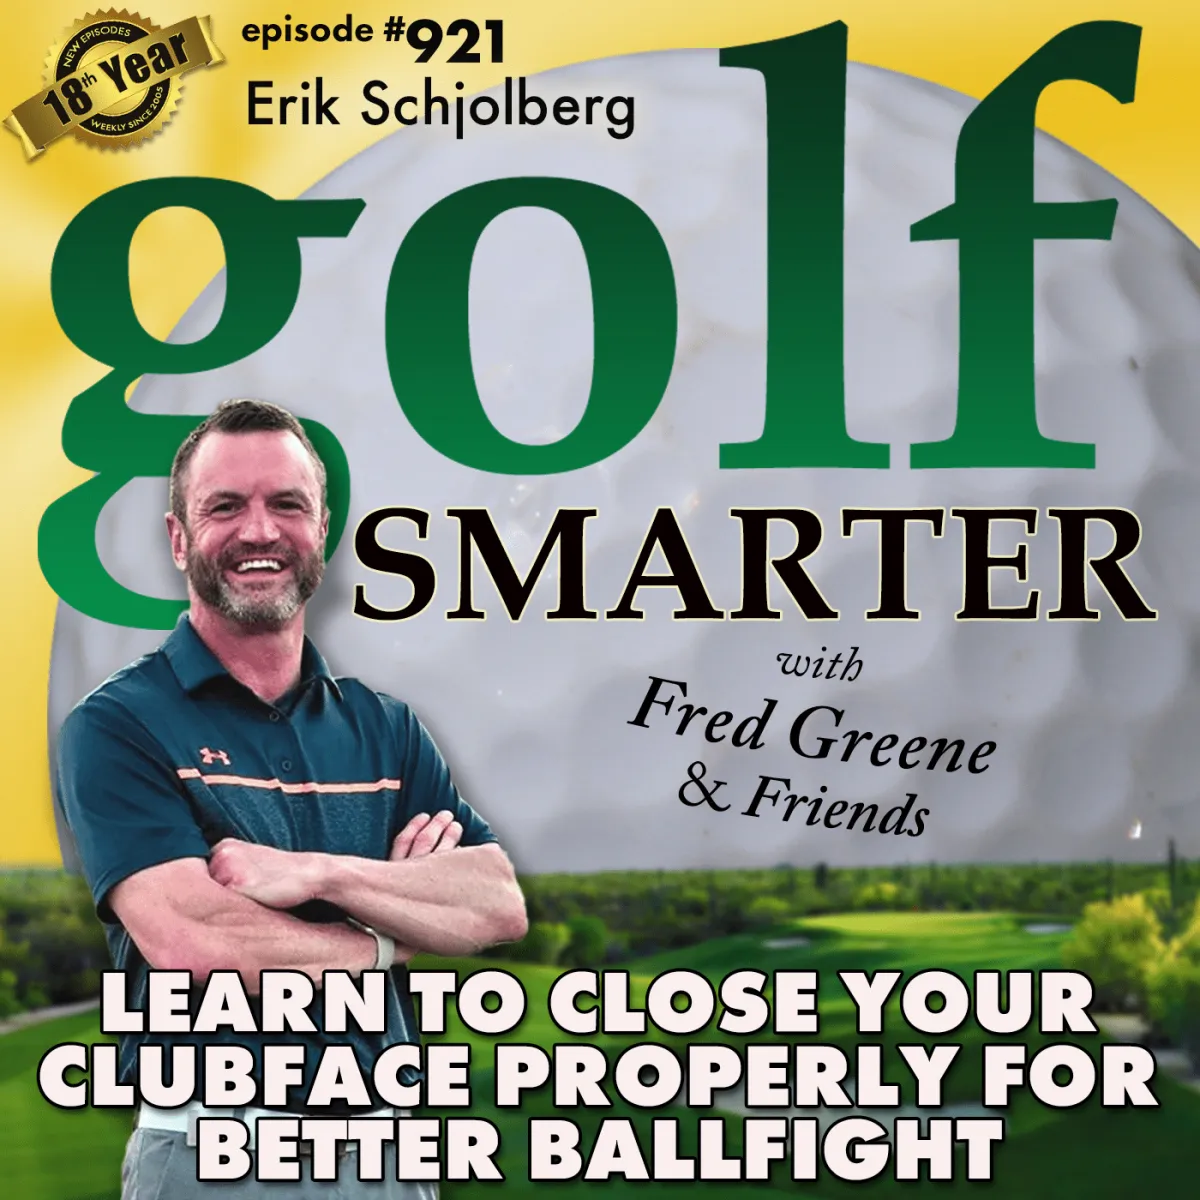 Golf Smarter Podcast Episode #921